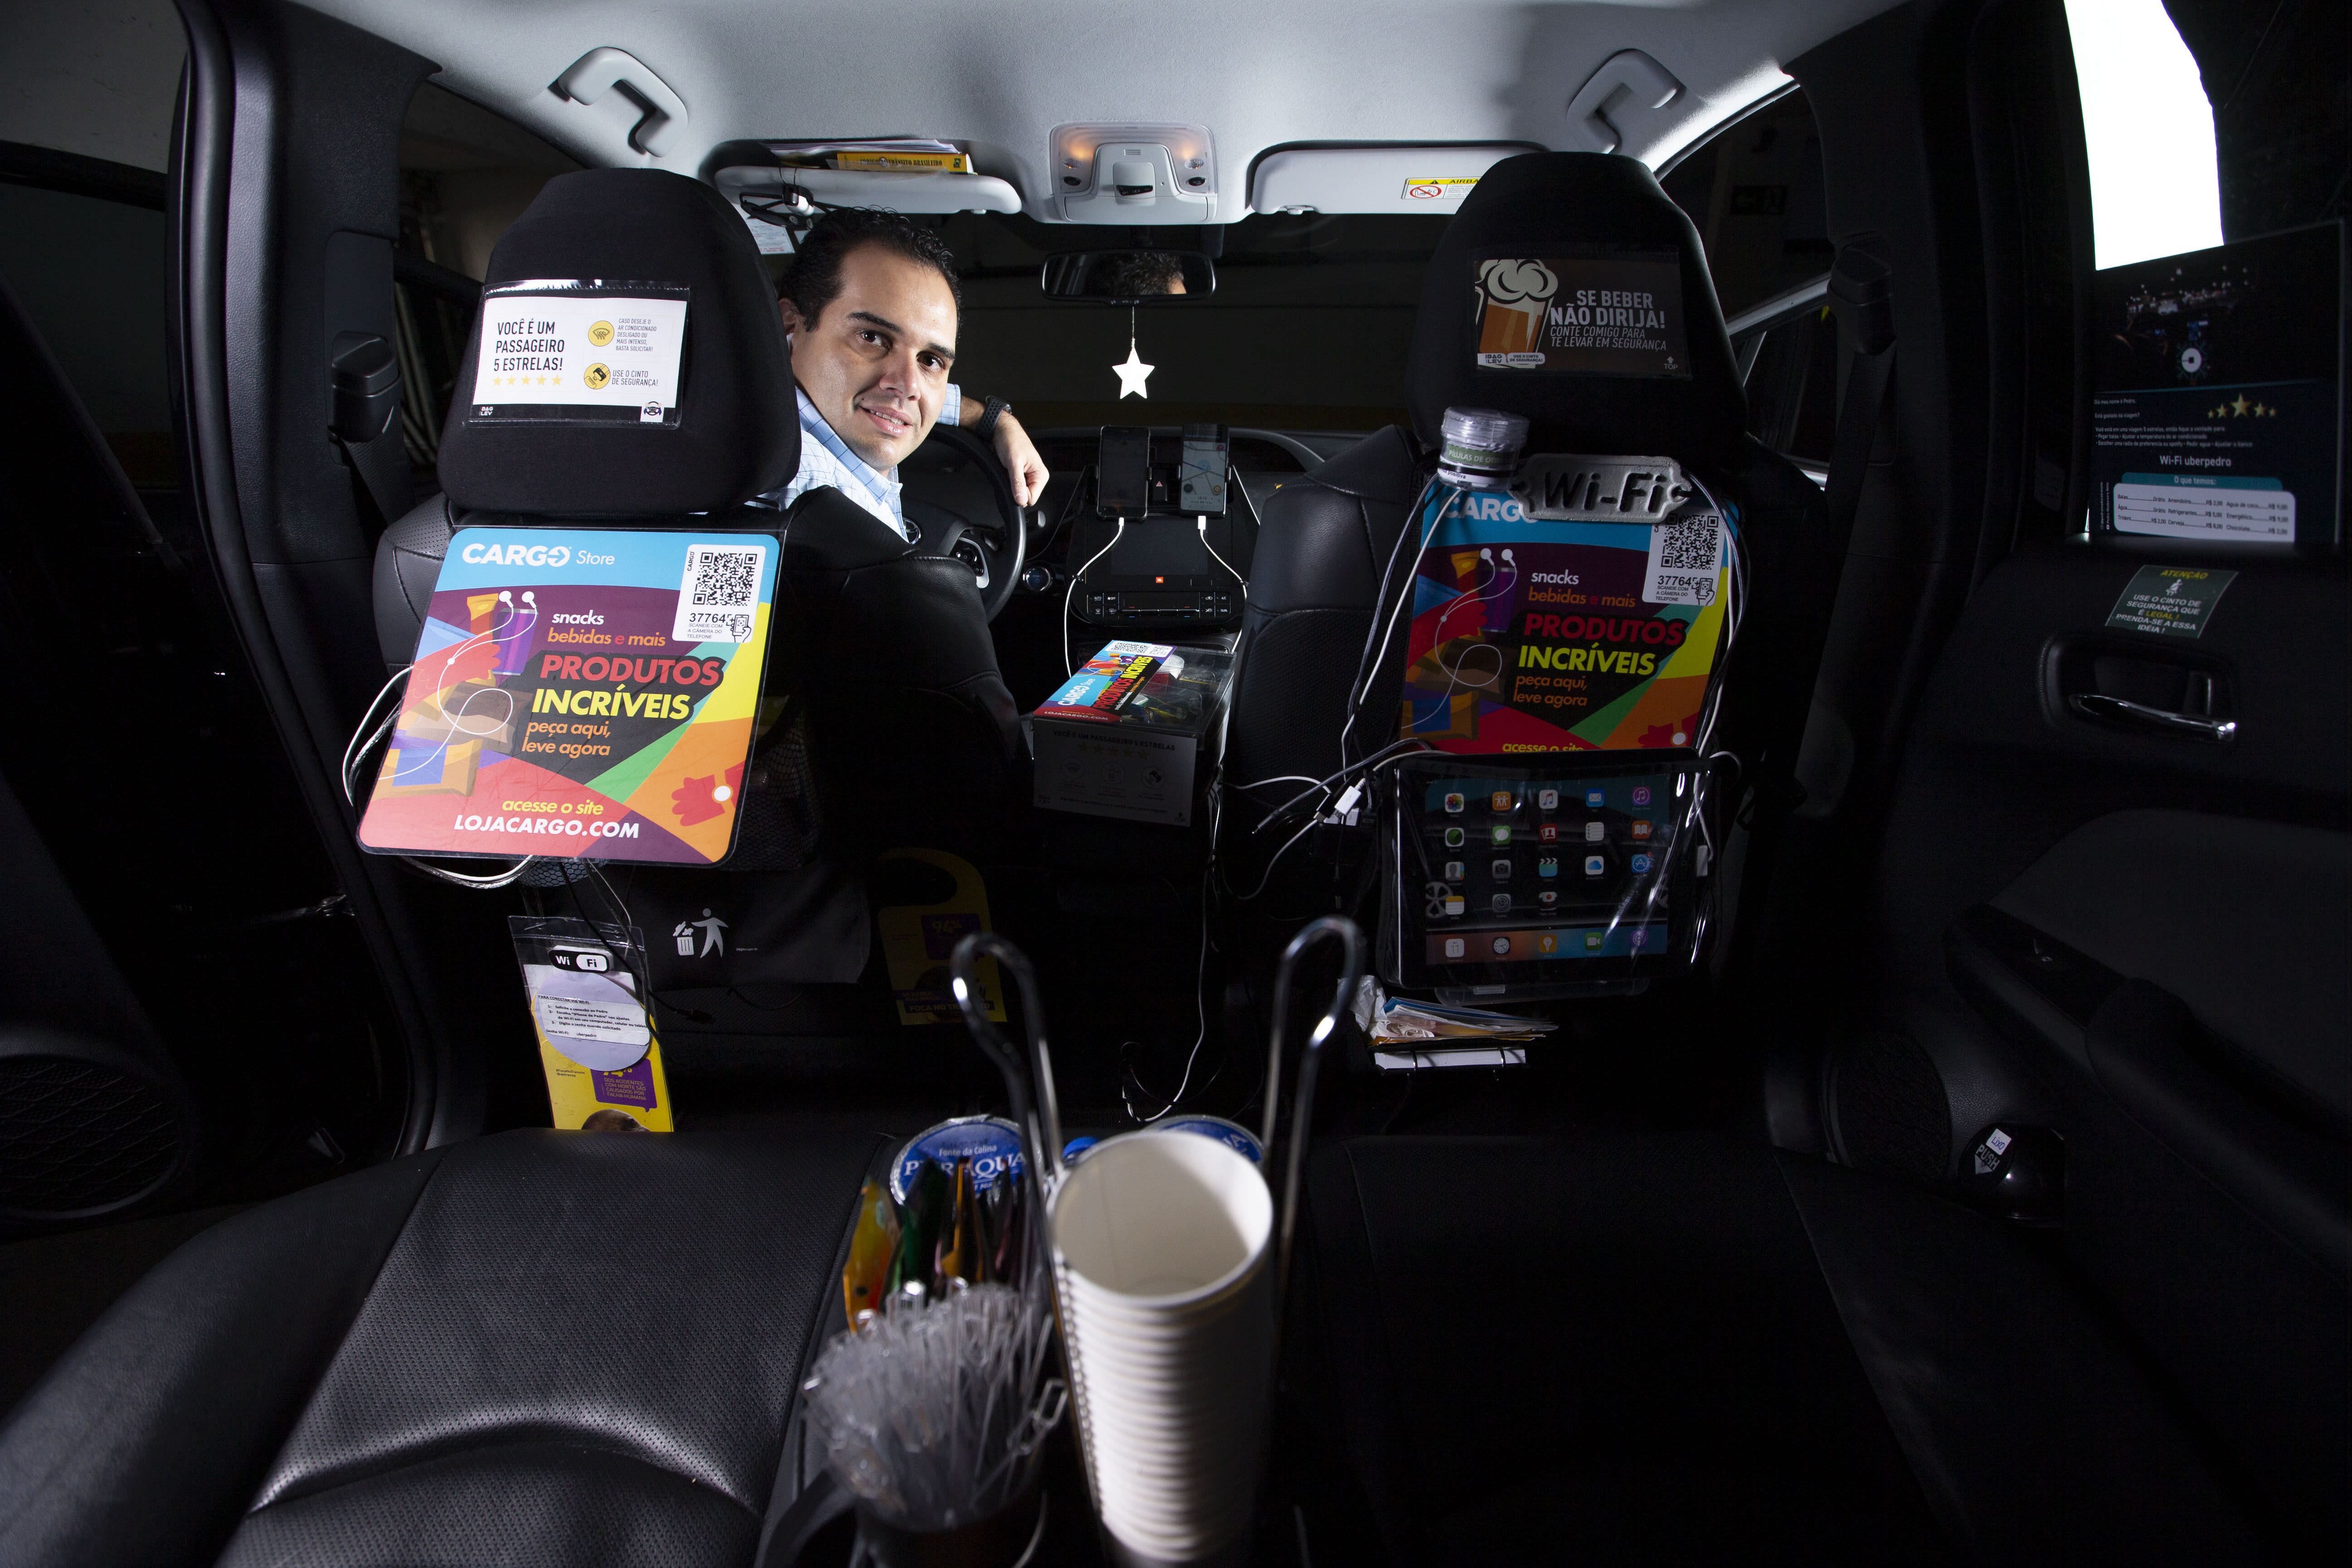 Motoristas de app vendem de cerveja a eletrônicos e cosméticos no carro